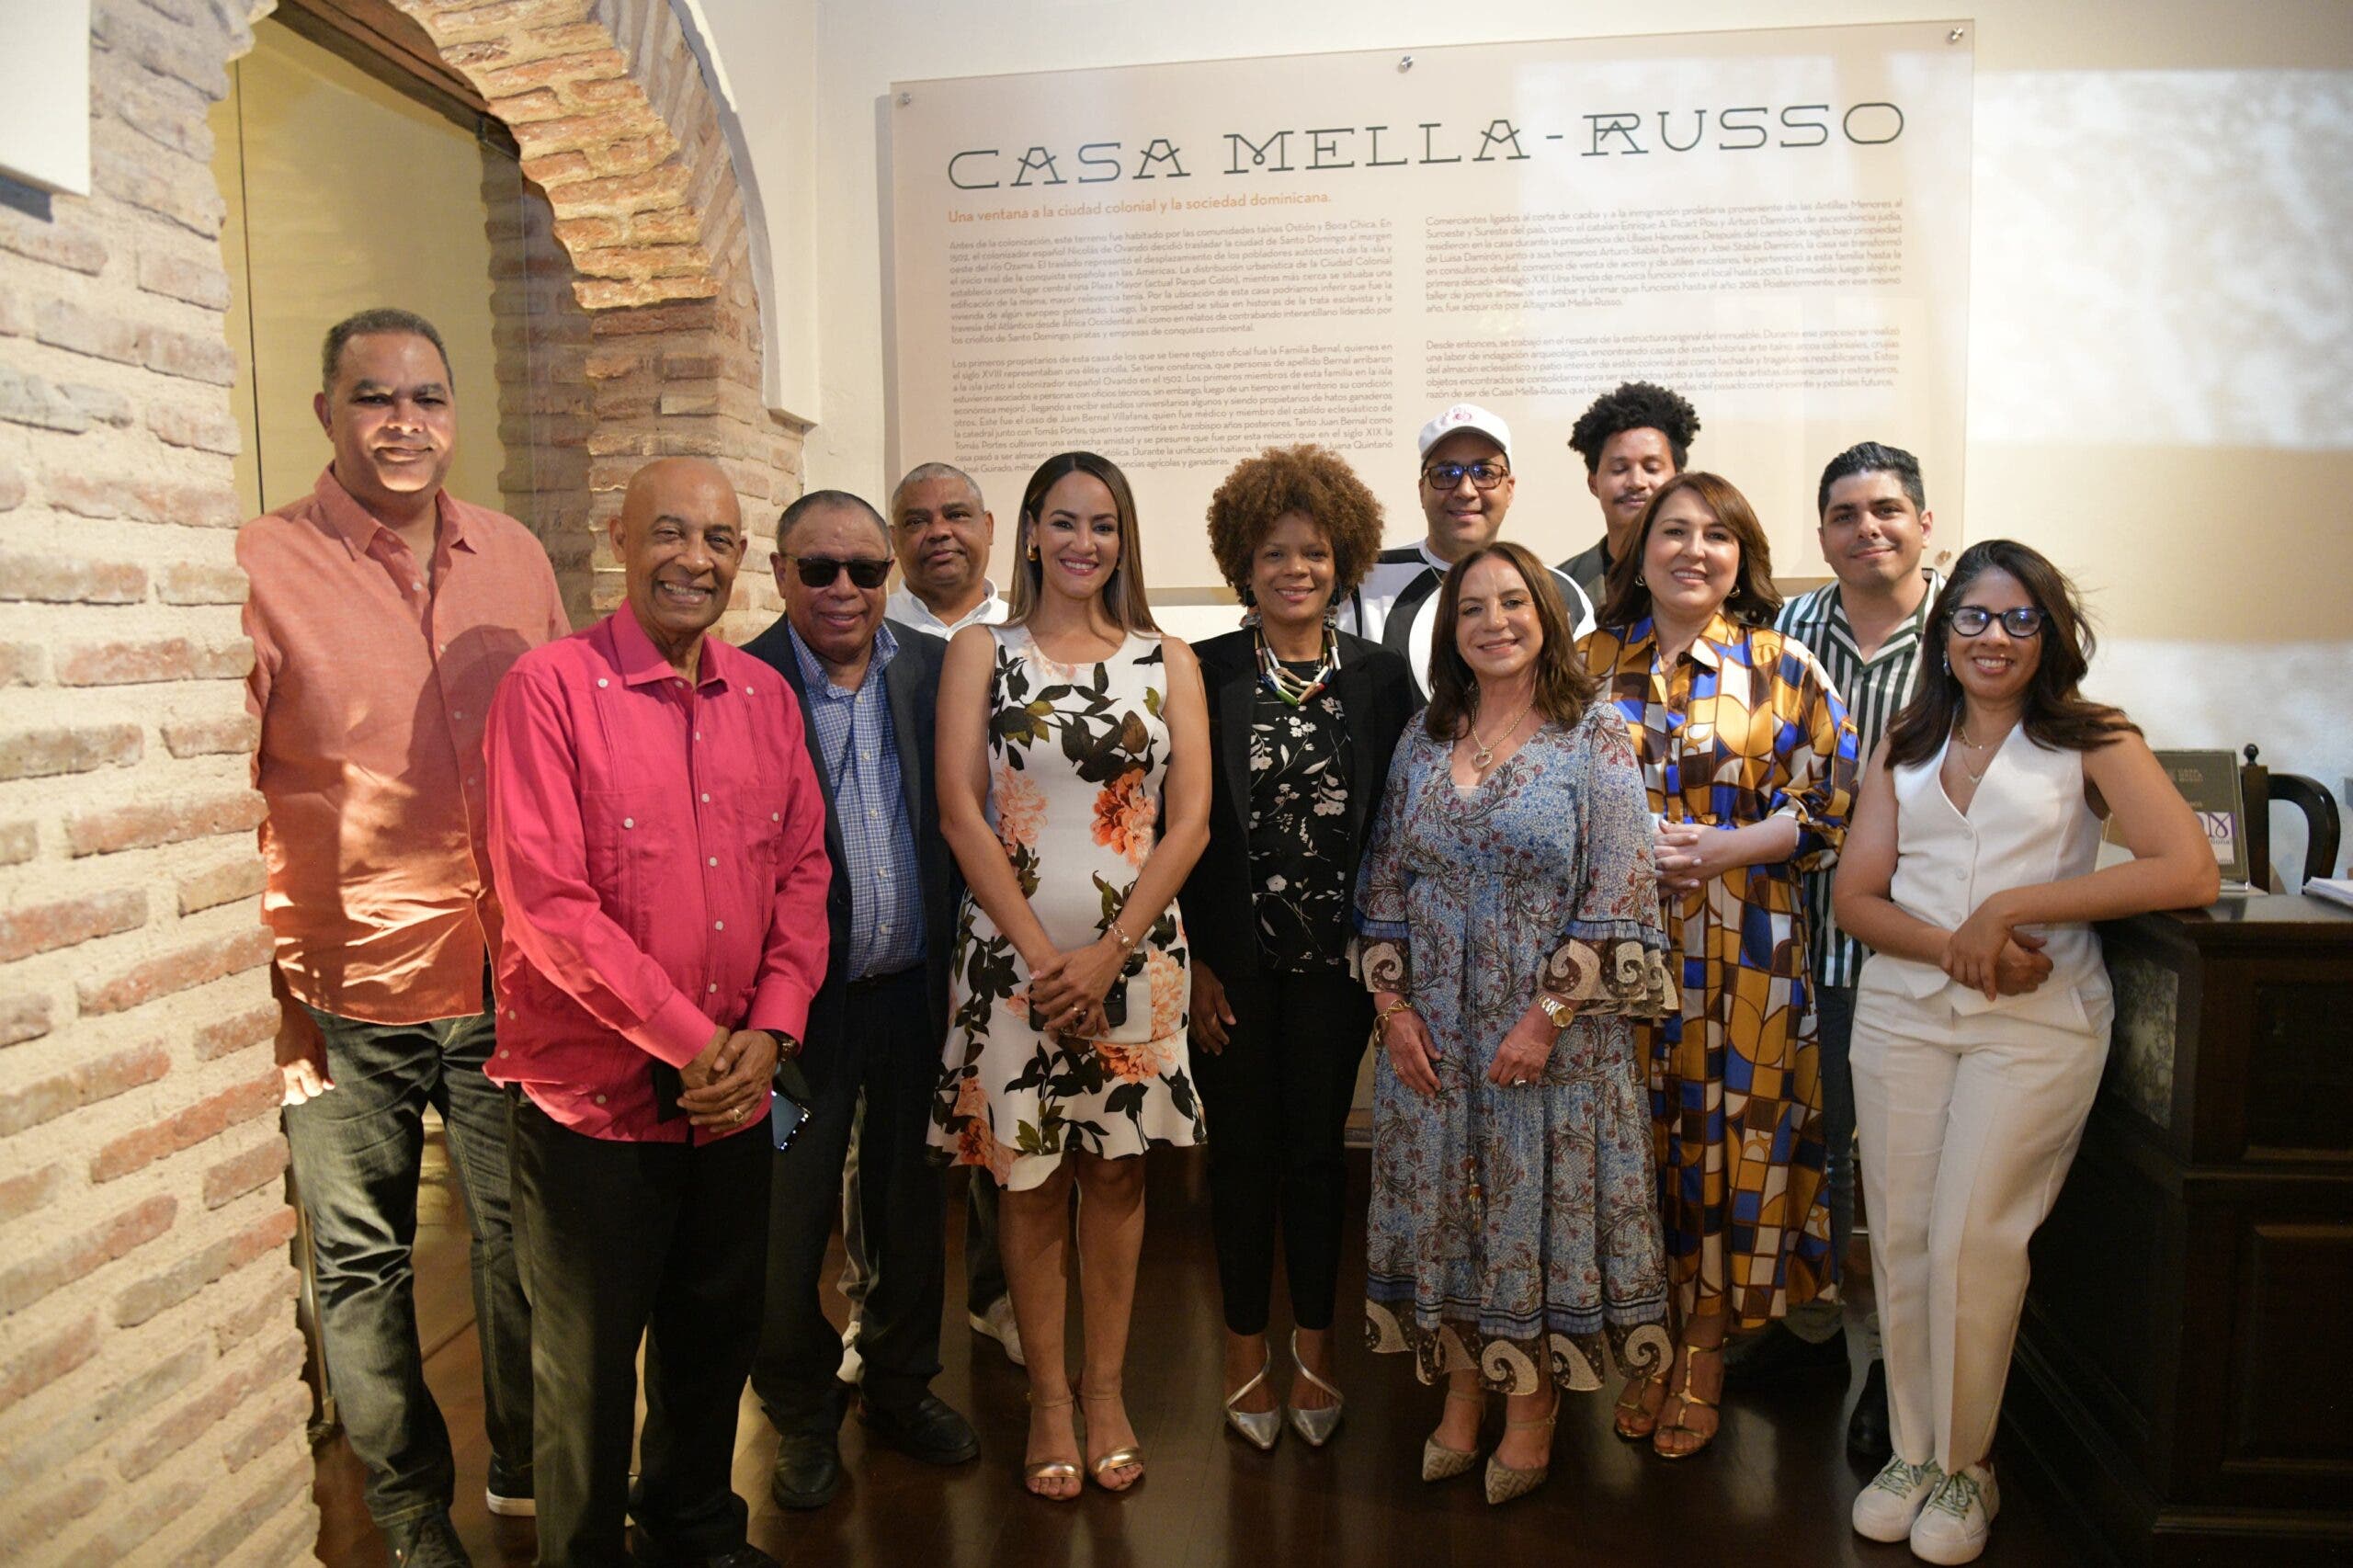 Acroarte destaca contribución de Casa Mella-Russo en la promoción del arte y la cultura